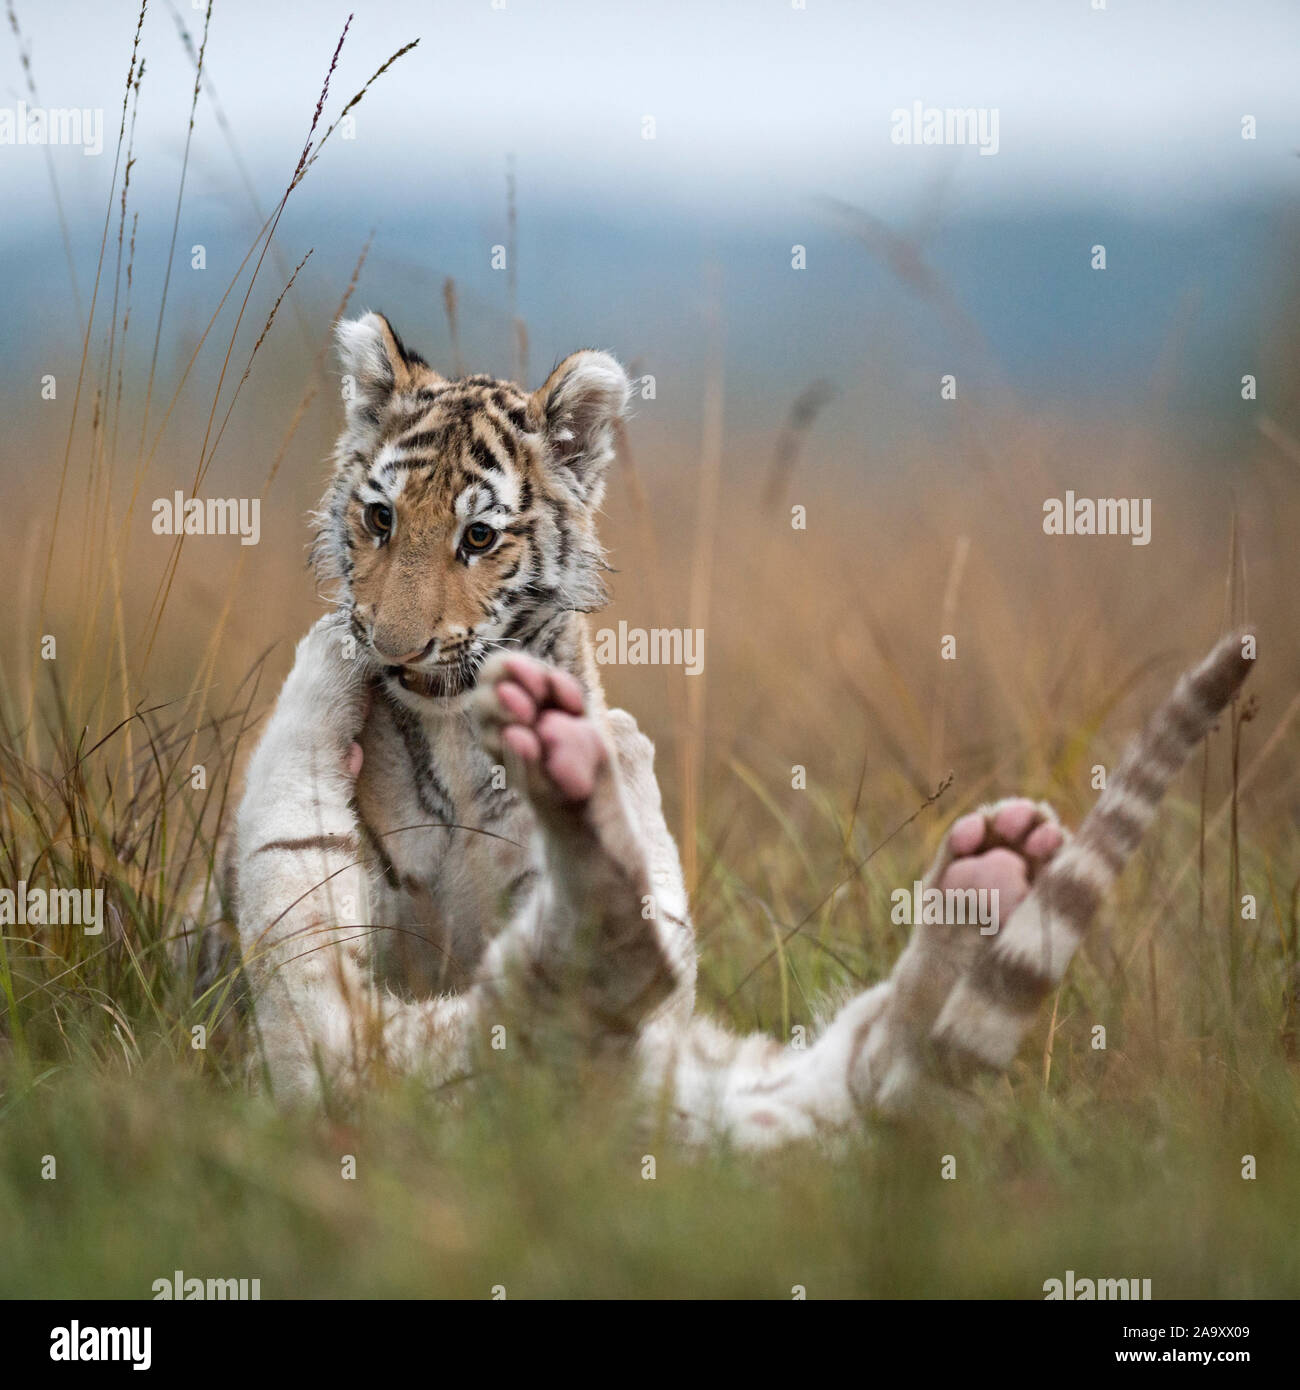 Royal le tigri del Bengala ( Panthera tigris ), giovani fratelli, giocando, wrestling, romging in erba alta, tipico ambiente naturale circostante, sembra divertente. Foto Stock